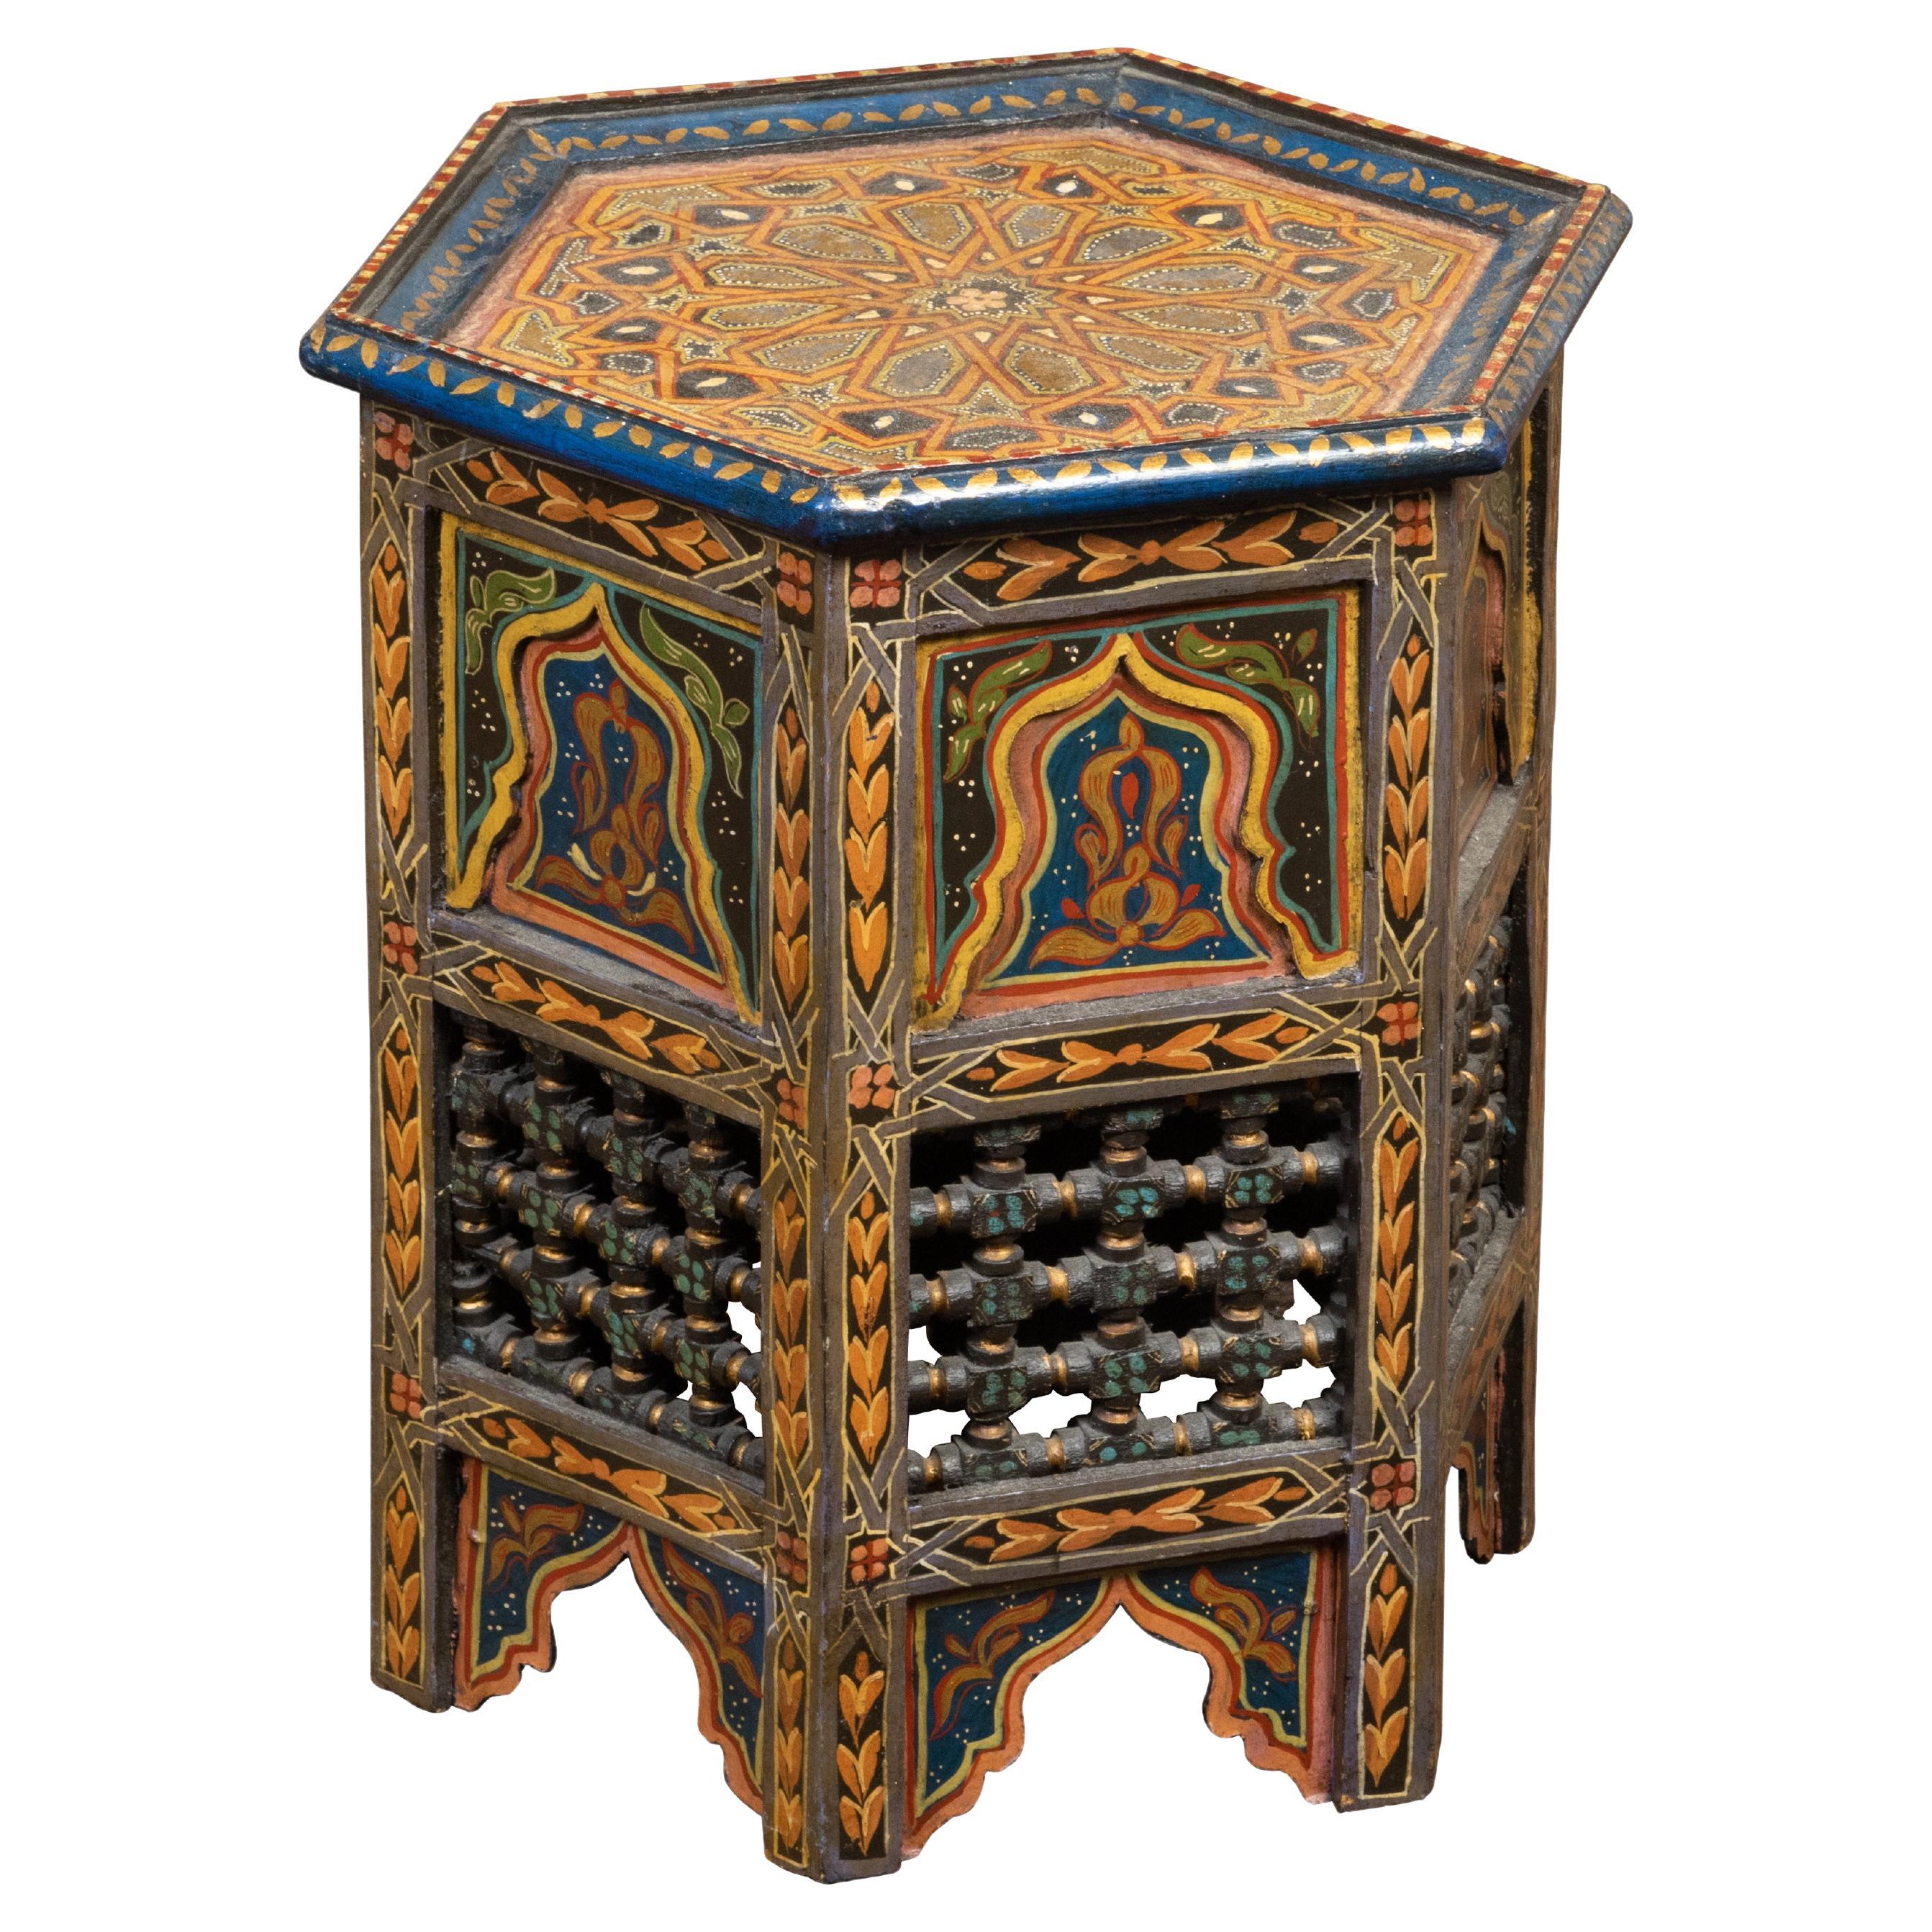 Marokkanischer Tisch im maurischen Stil der 1920er Jahre mit sechseckiger Platte und polychromem Dekor